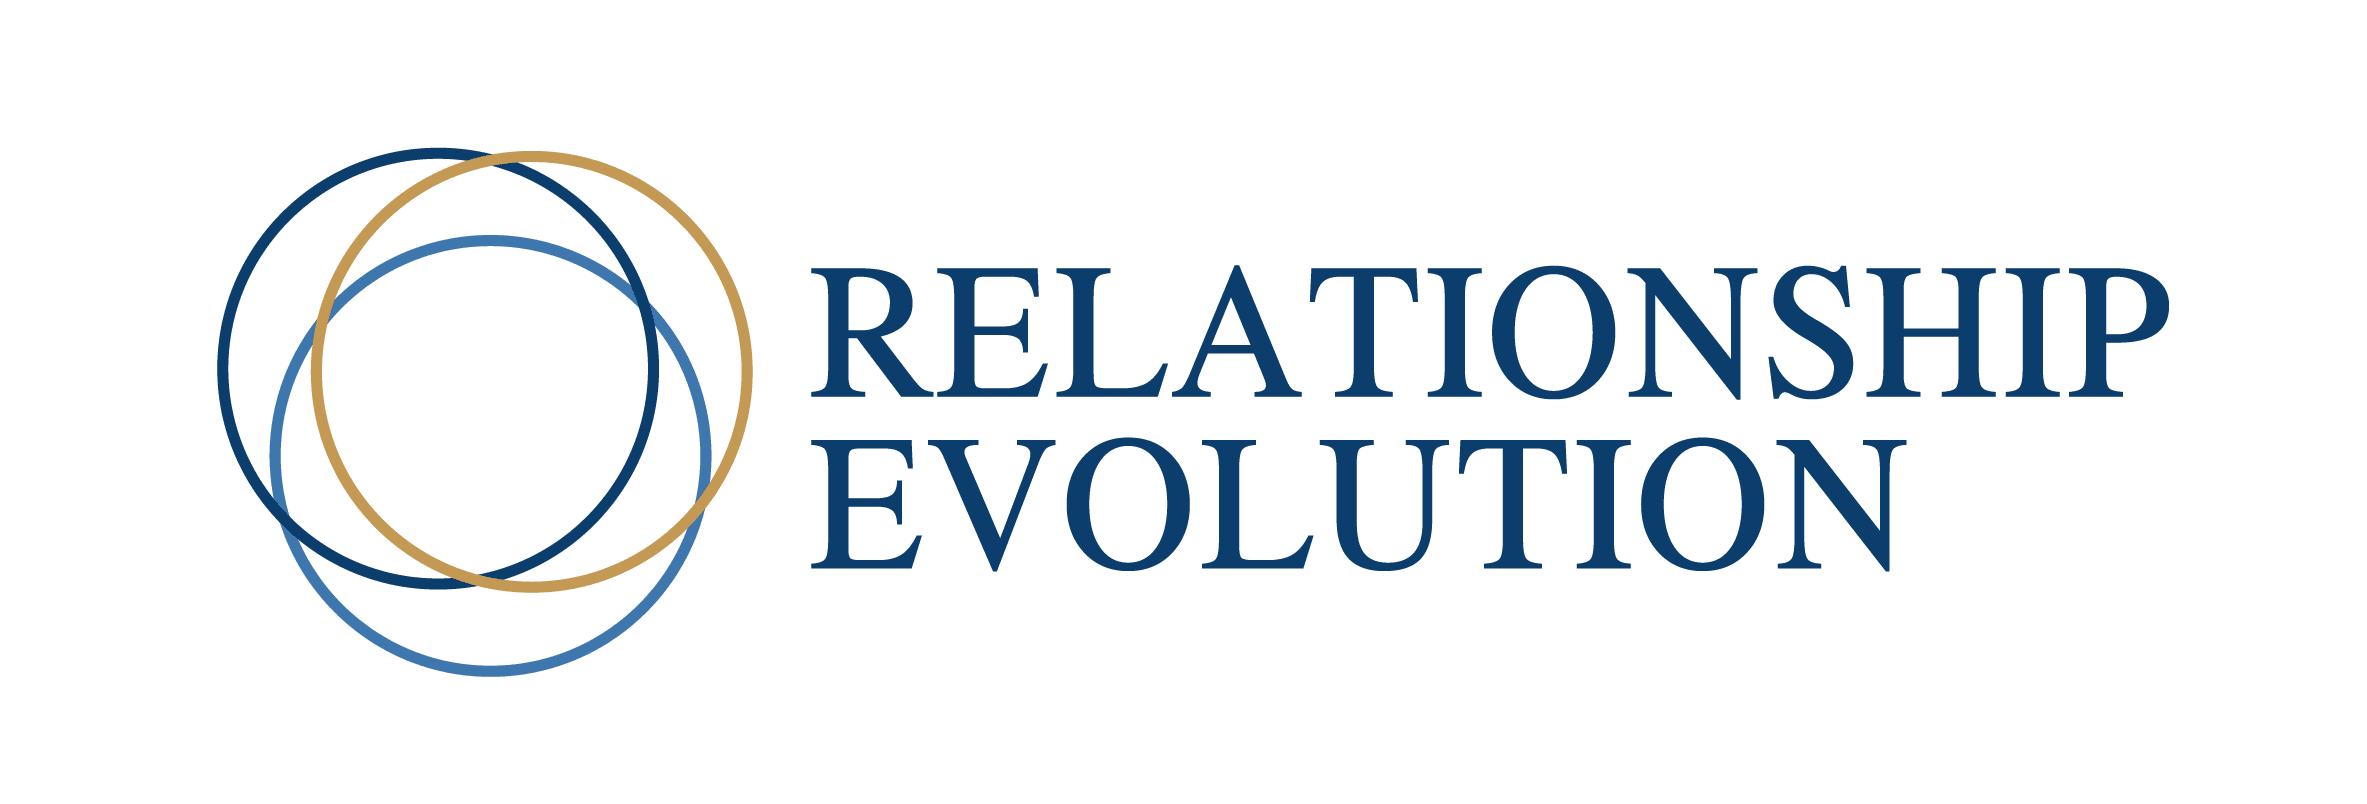 Dr.Marcu Abreu Relationship Evolution Program